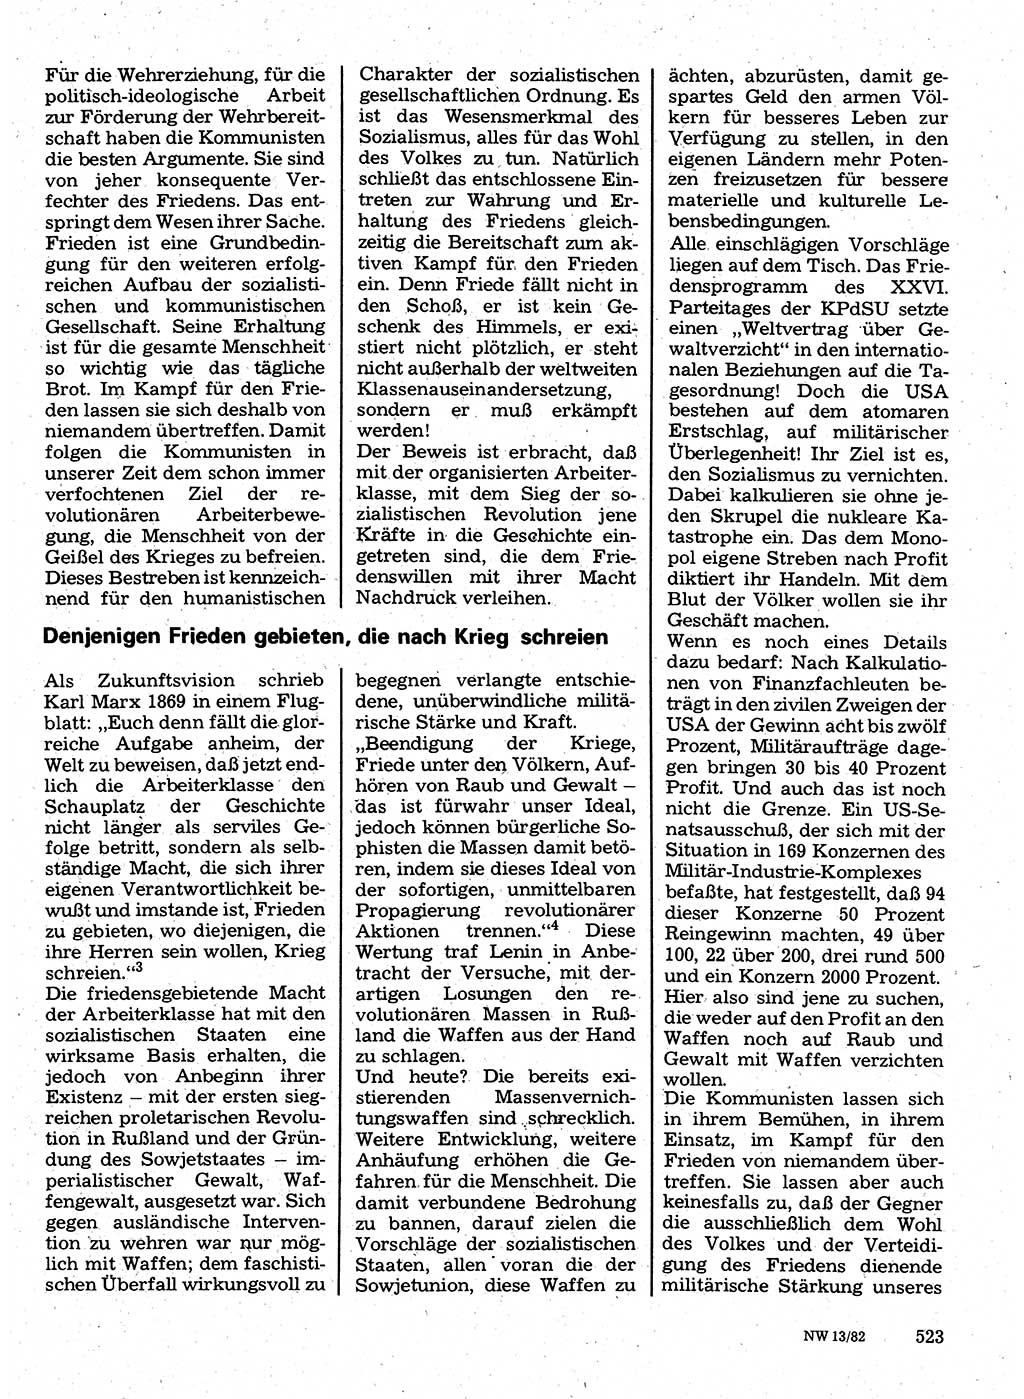 Neuer Weg (NW), Organ des Zentralkomitees (ZK) der SED (Sozialistische Einheitspartei Deutschlands) für Fragen des Parteilebens, 37. Jahrgang [Deutsche Demokratische Republik (DDR)] 1982, Seite 523 (NW ZK SED DDR 1982, S. 523)